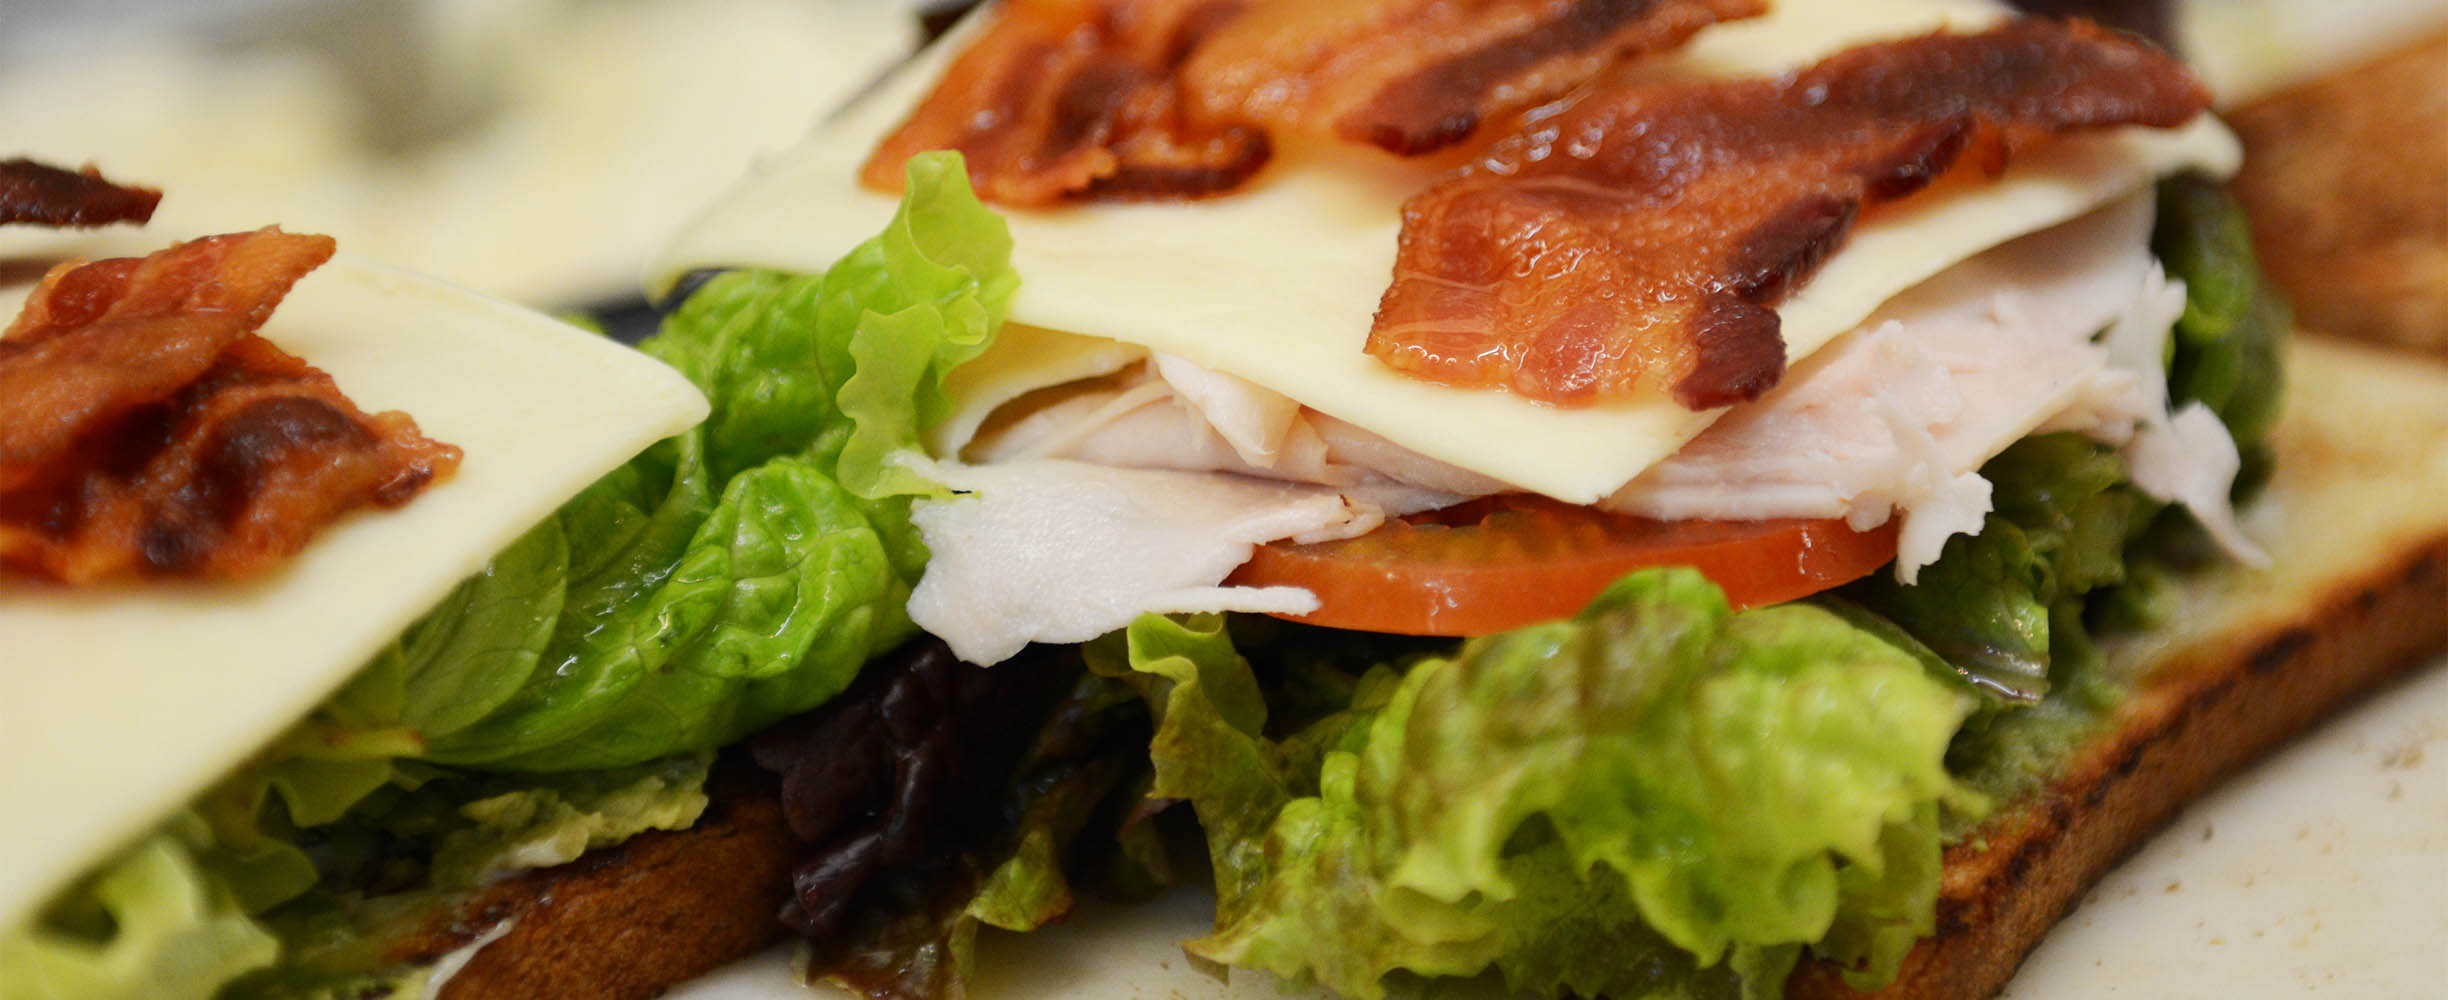 Turkey, bacon, lettuce and tomato sandwich in Palo Alto